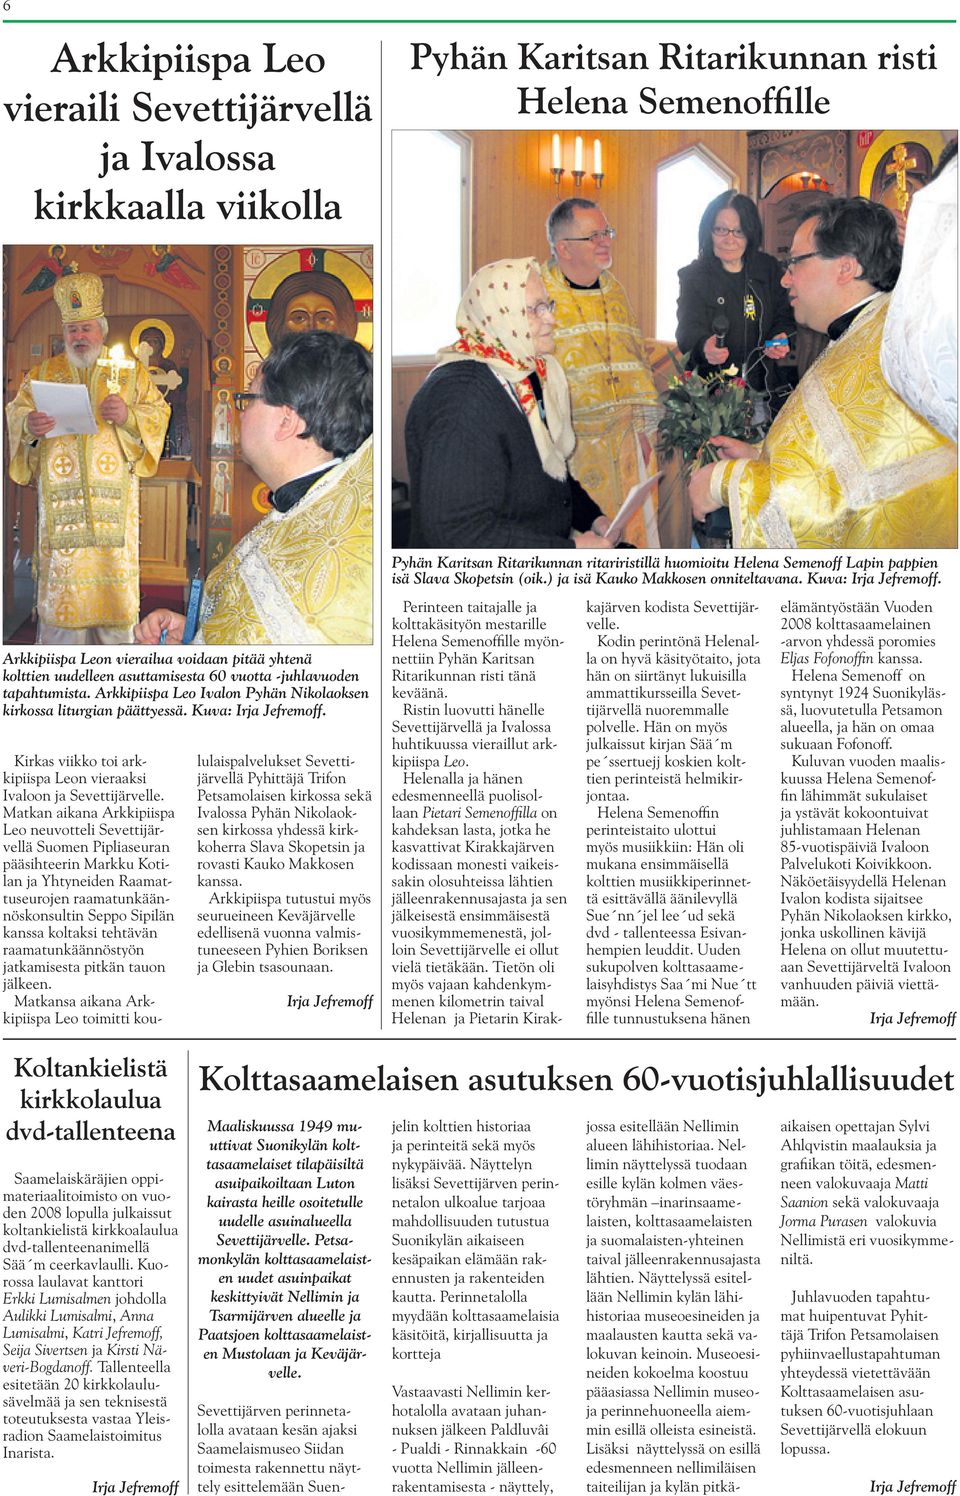 Kirkas viikko toi arkkipiispa Leon vieraaksi Ivaloon ja Sevettijärvelle.